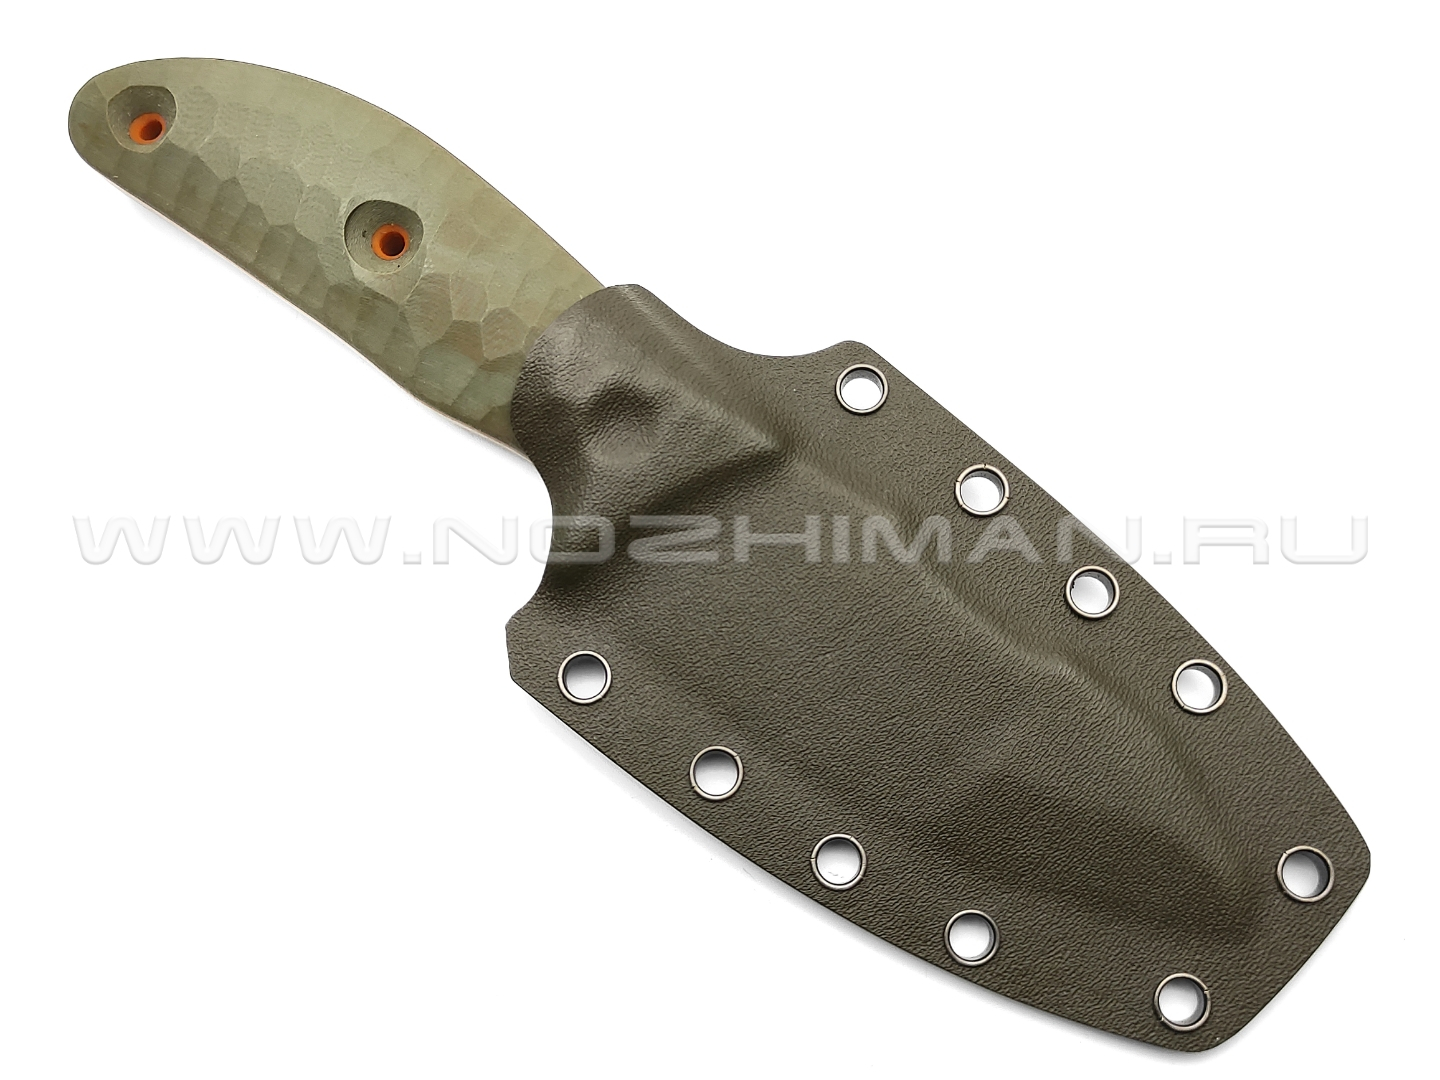 Dyag knives нож Model02_1 сталь N690, рукоять G10 olive